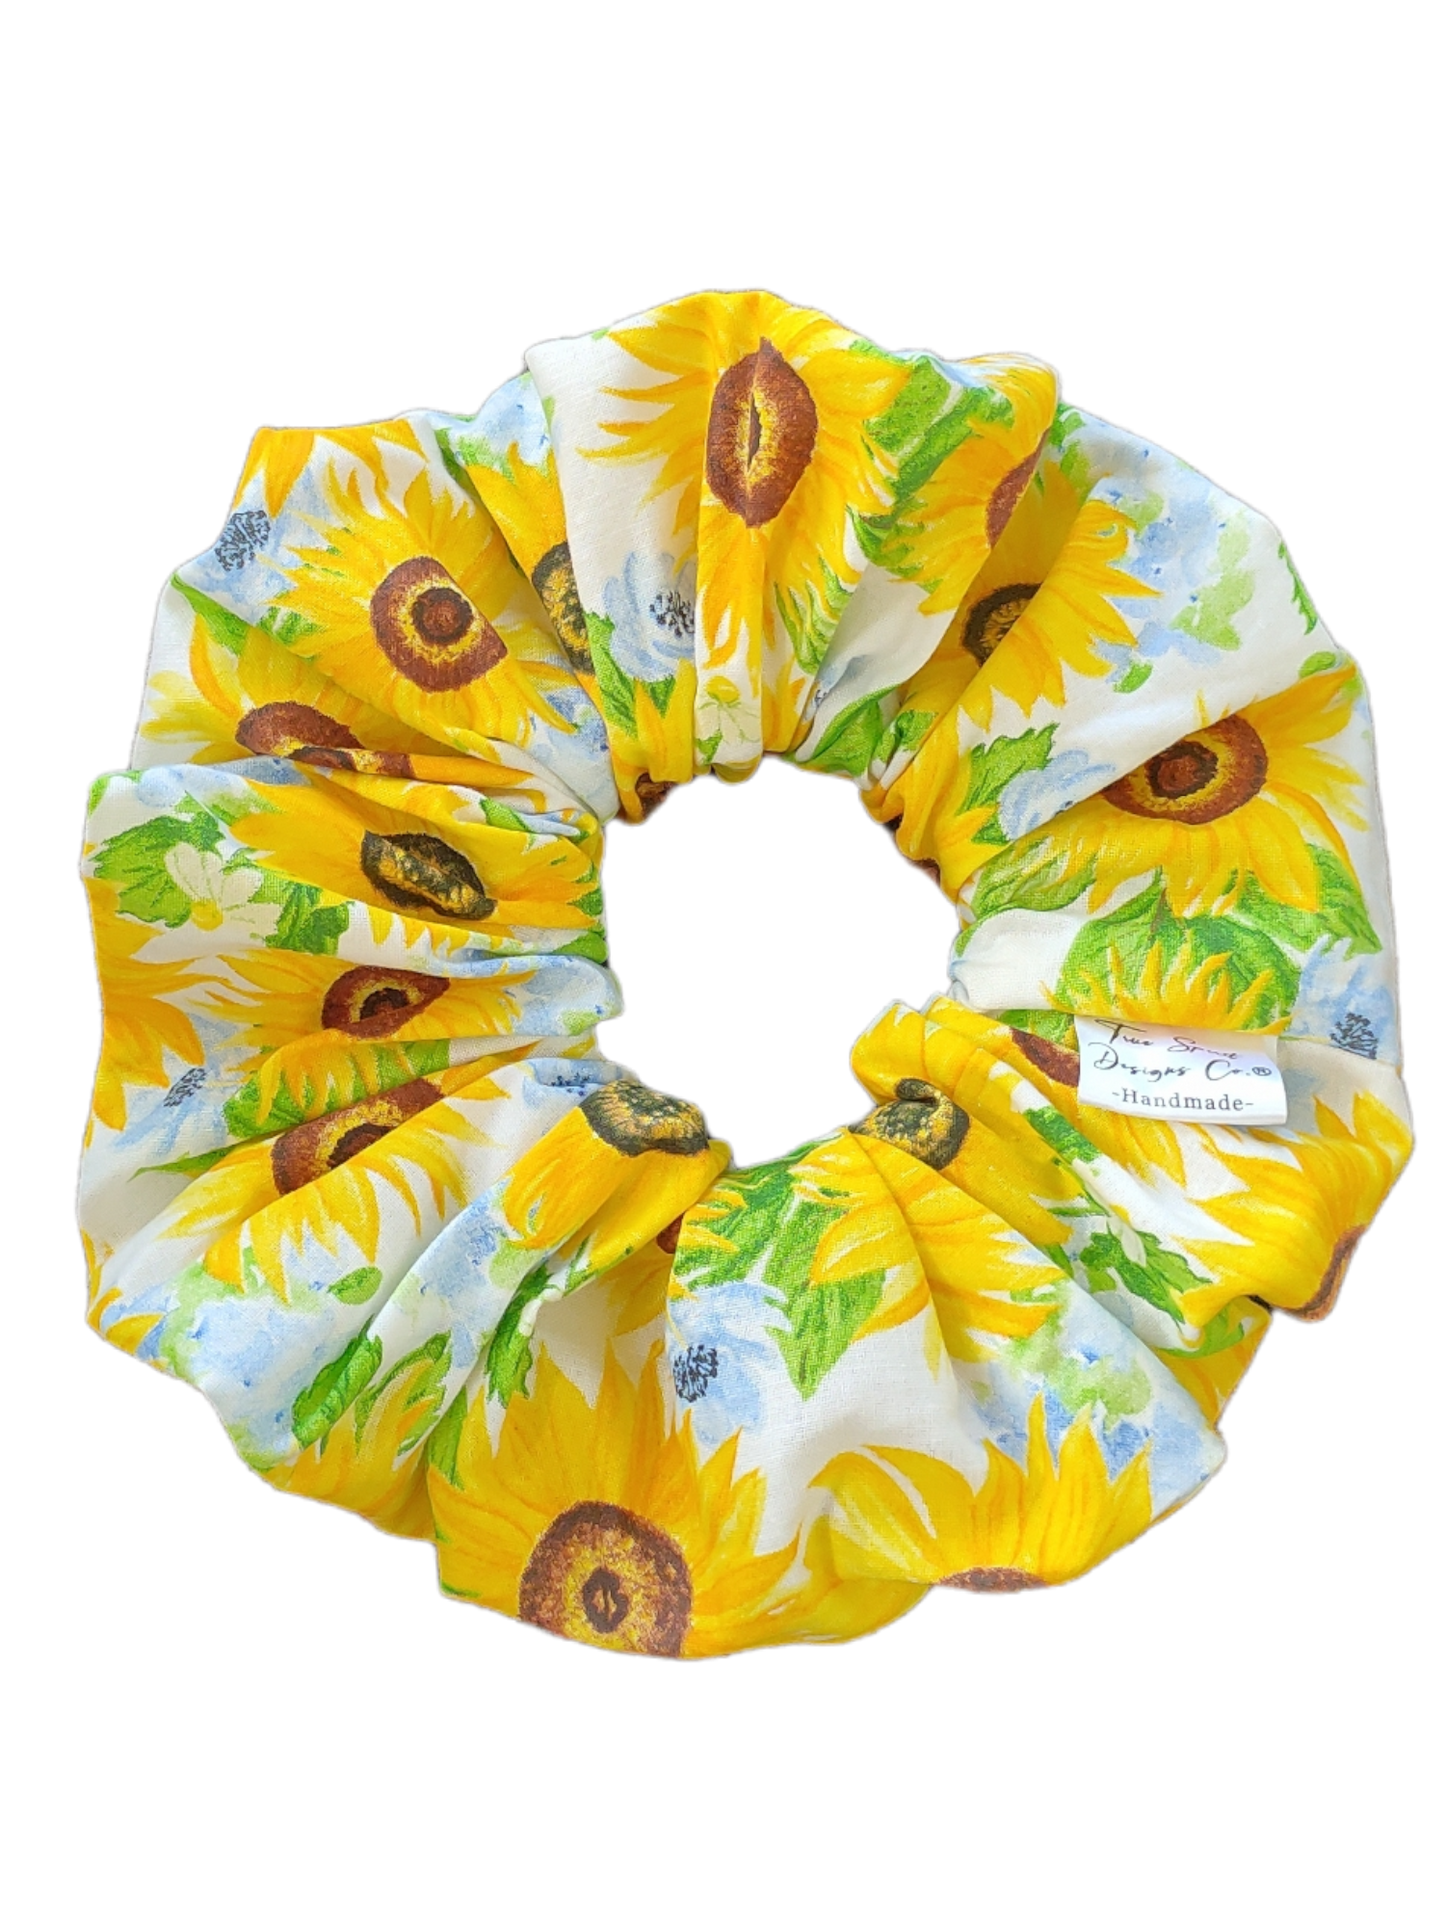 XXL Sunflowers